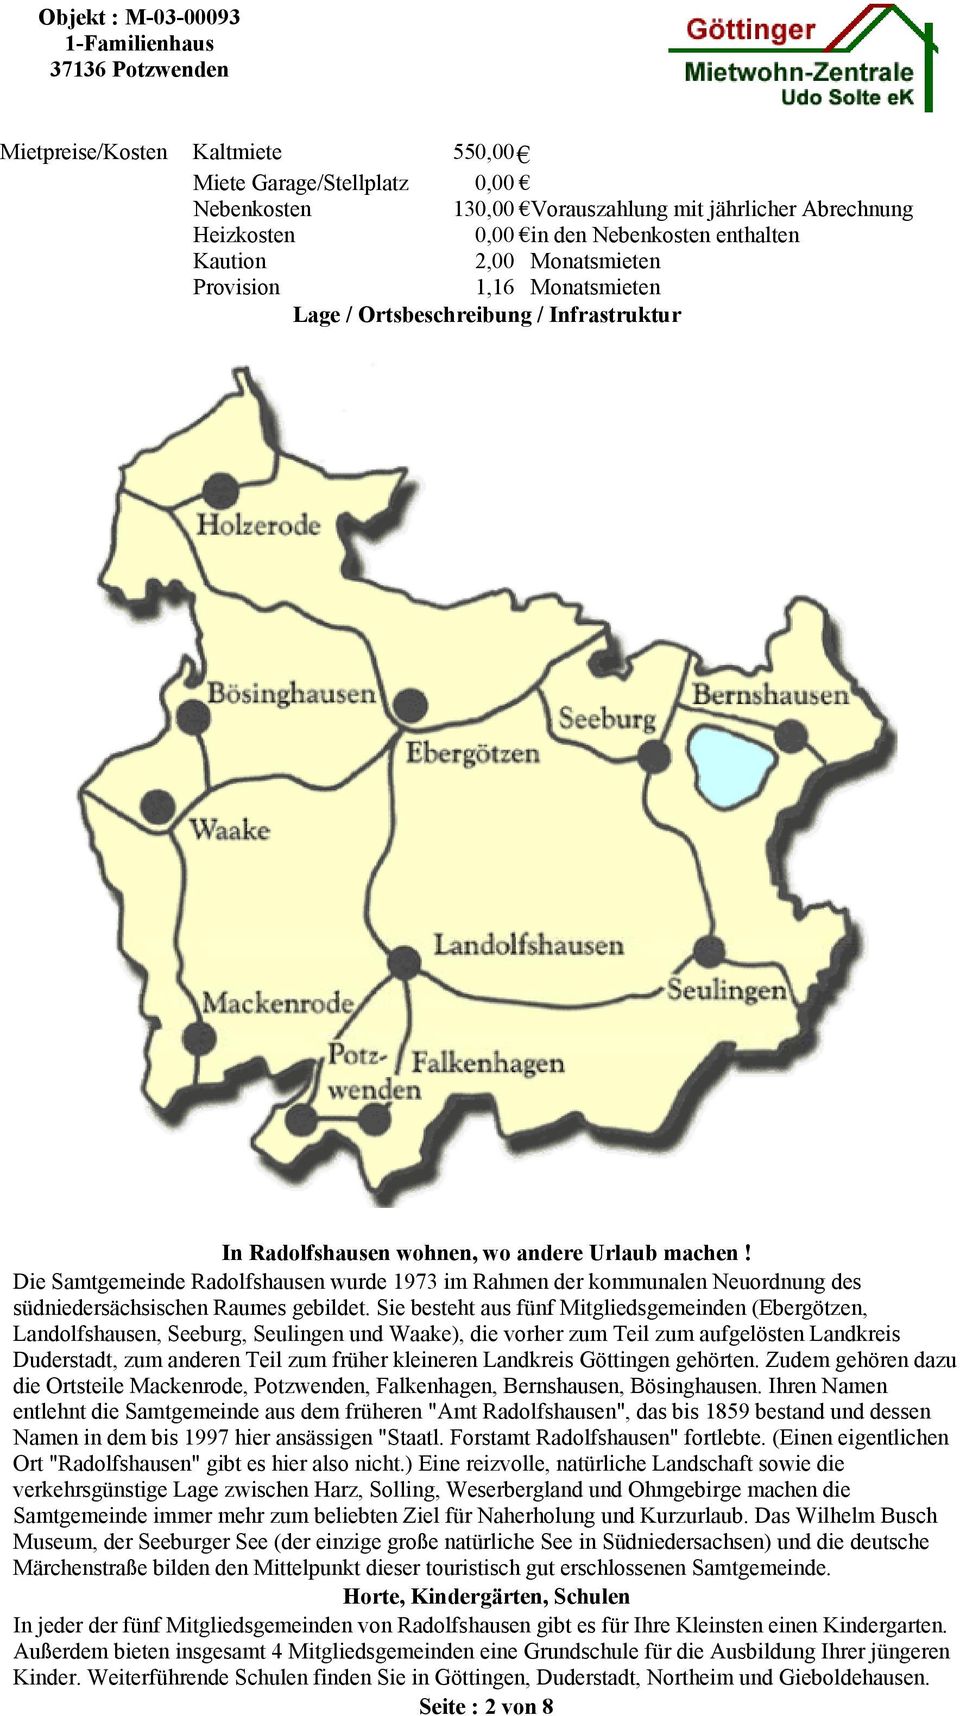 Die Samtgemeinde Radolfshausen wurde 1973 im Rahmen der kommunalen Neuordnung des südniedersächsischen Raumes gebildet.